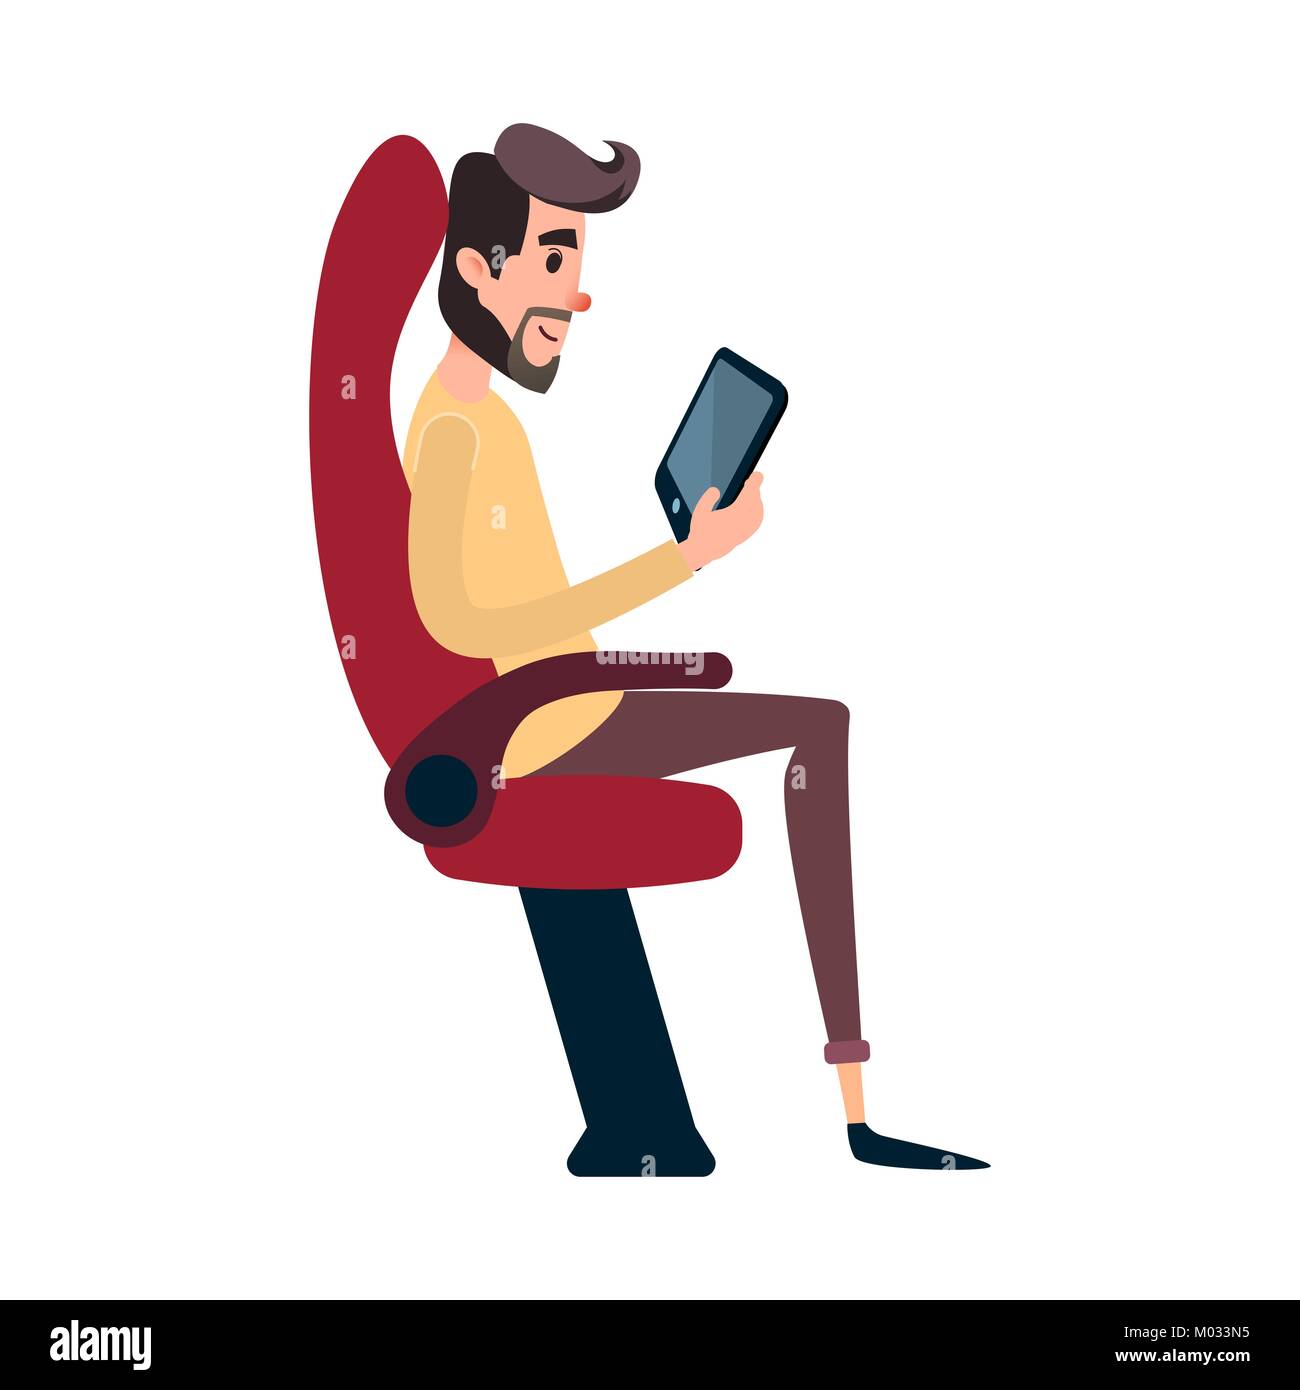 Ein Mann ist ein Passagier im Bus oder Flugzeug. Ein junger Mann sitzt im Flugzeug s Stuhl und schaut sich die Tablette. Der bus Sitz ist durch die Lektüre Mann besetzt. Stock Vektor